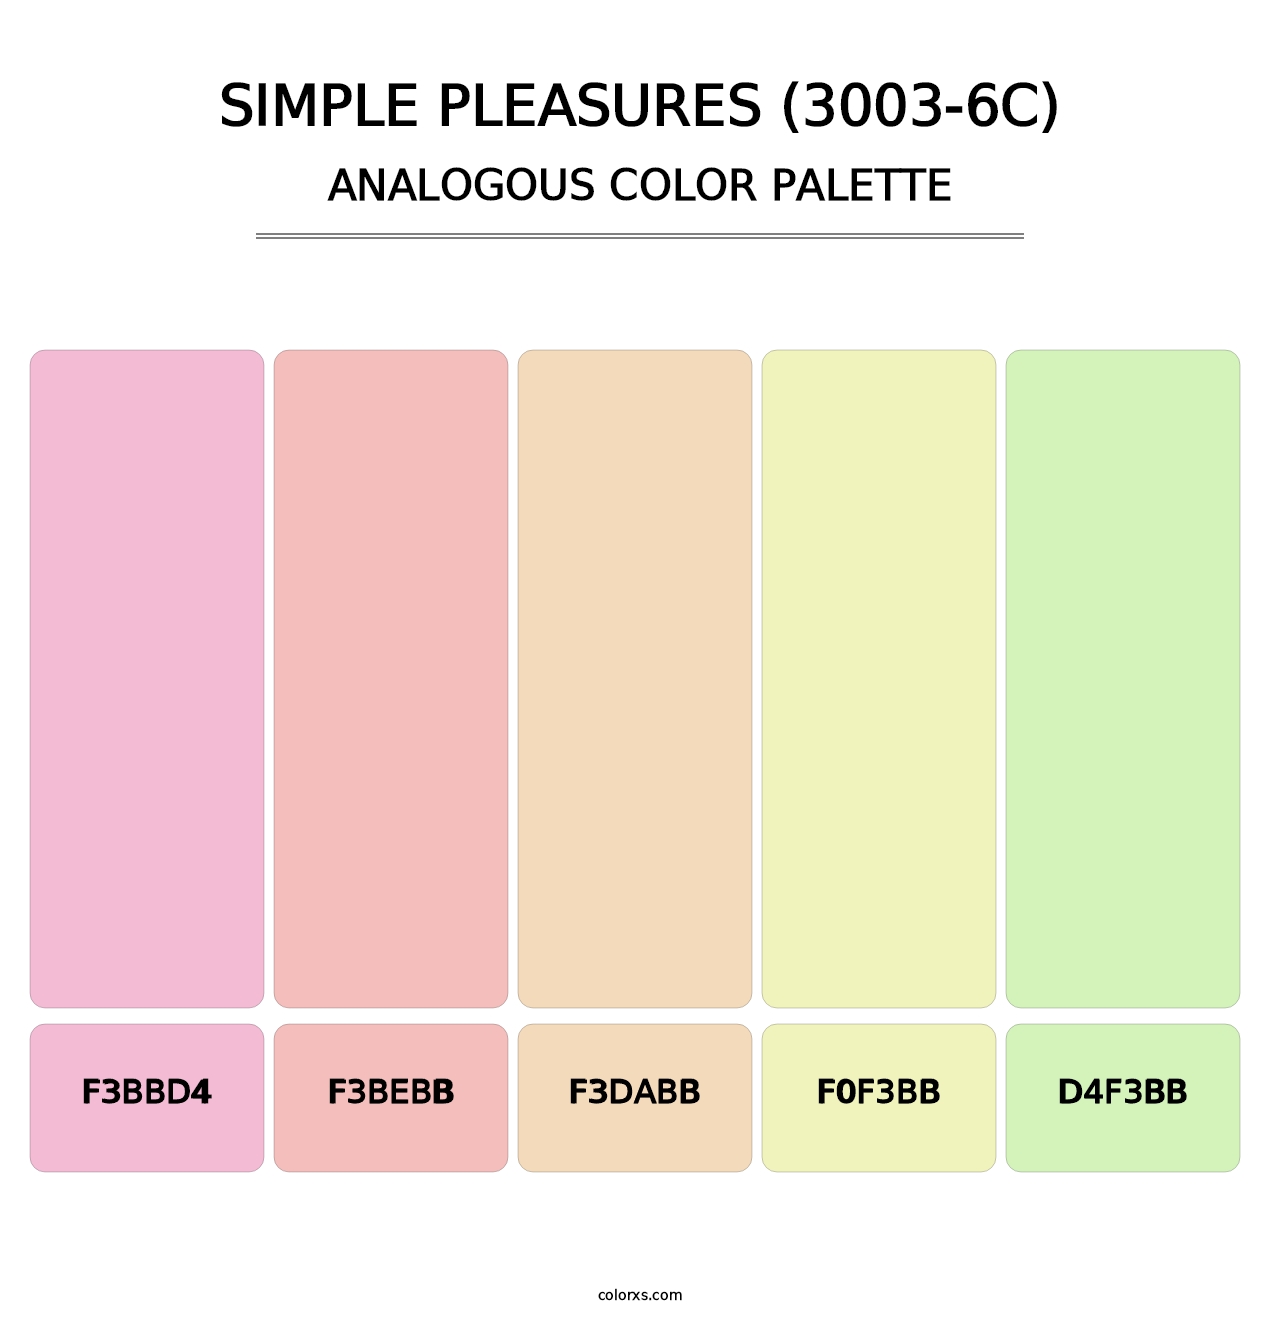 Simple Pleasures (3003-6C) - Analogous Color Palette